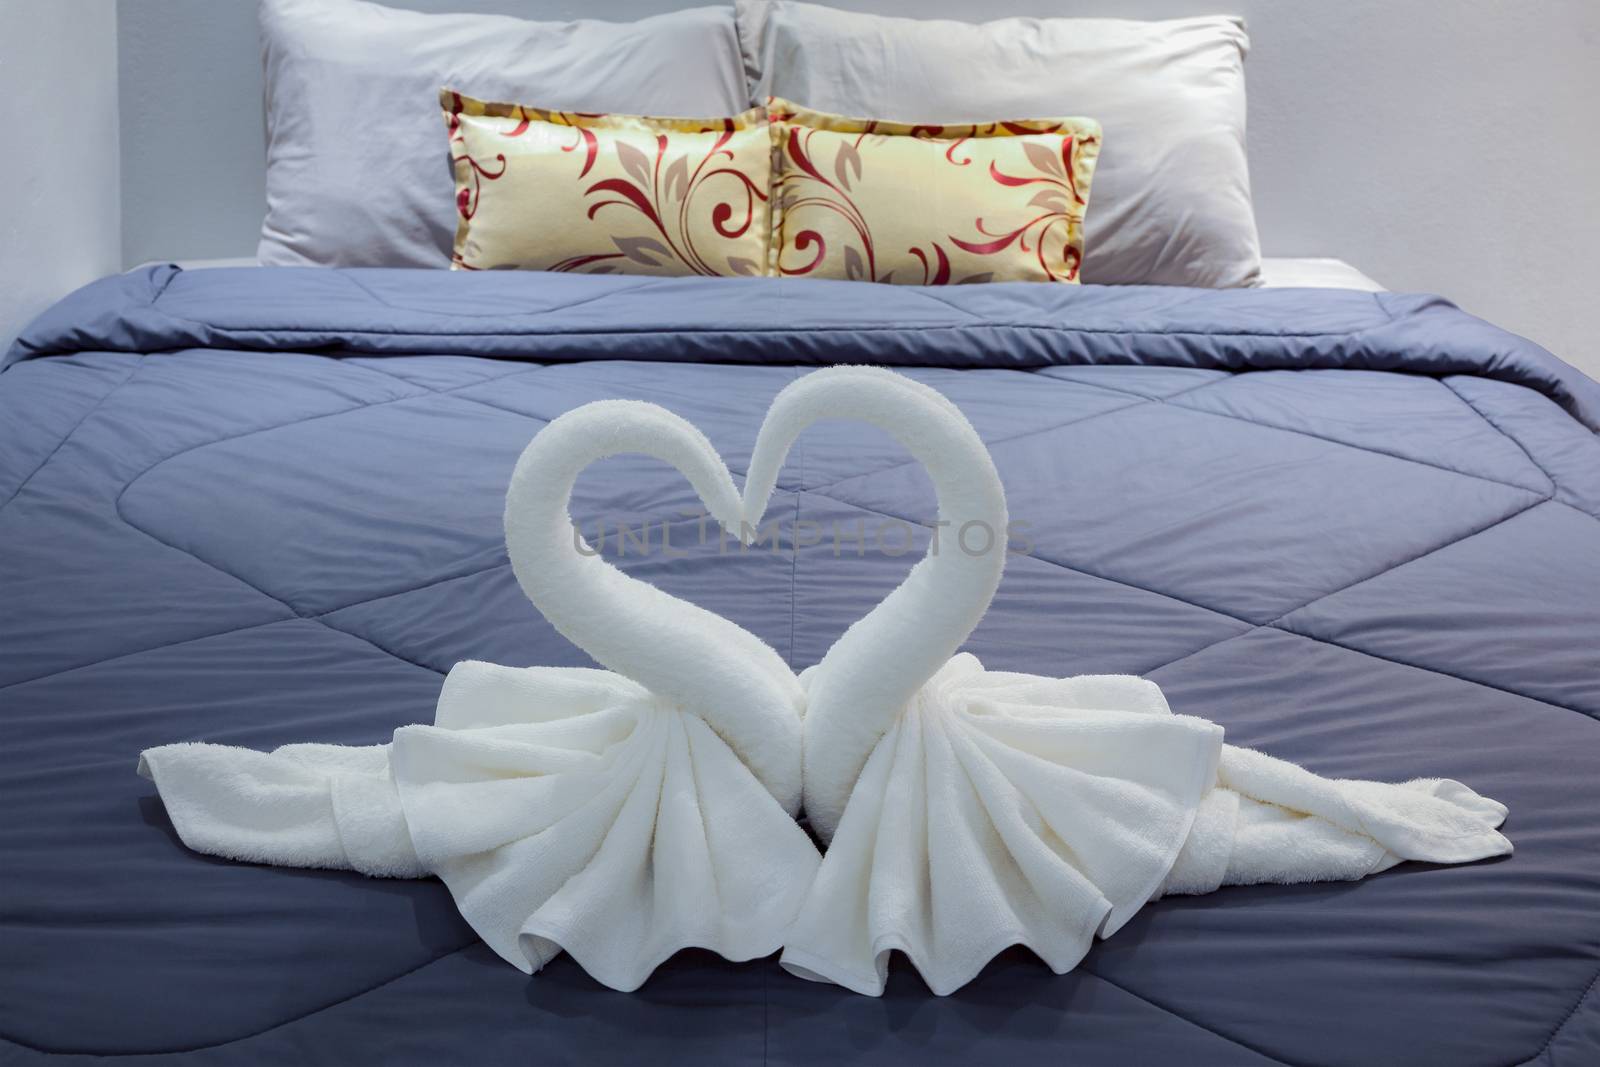 towel folded in swan shape on bed sheet by FrameAngel